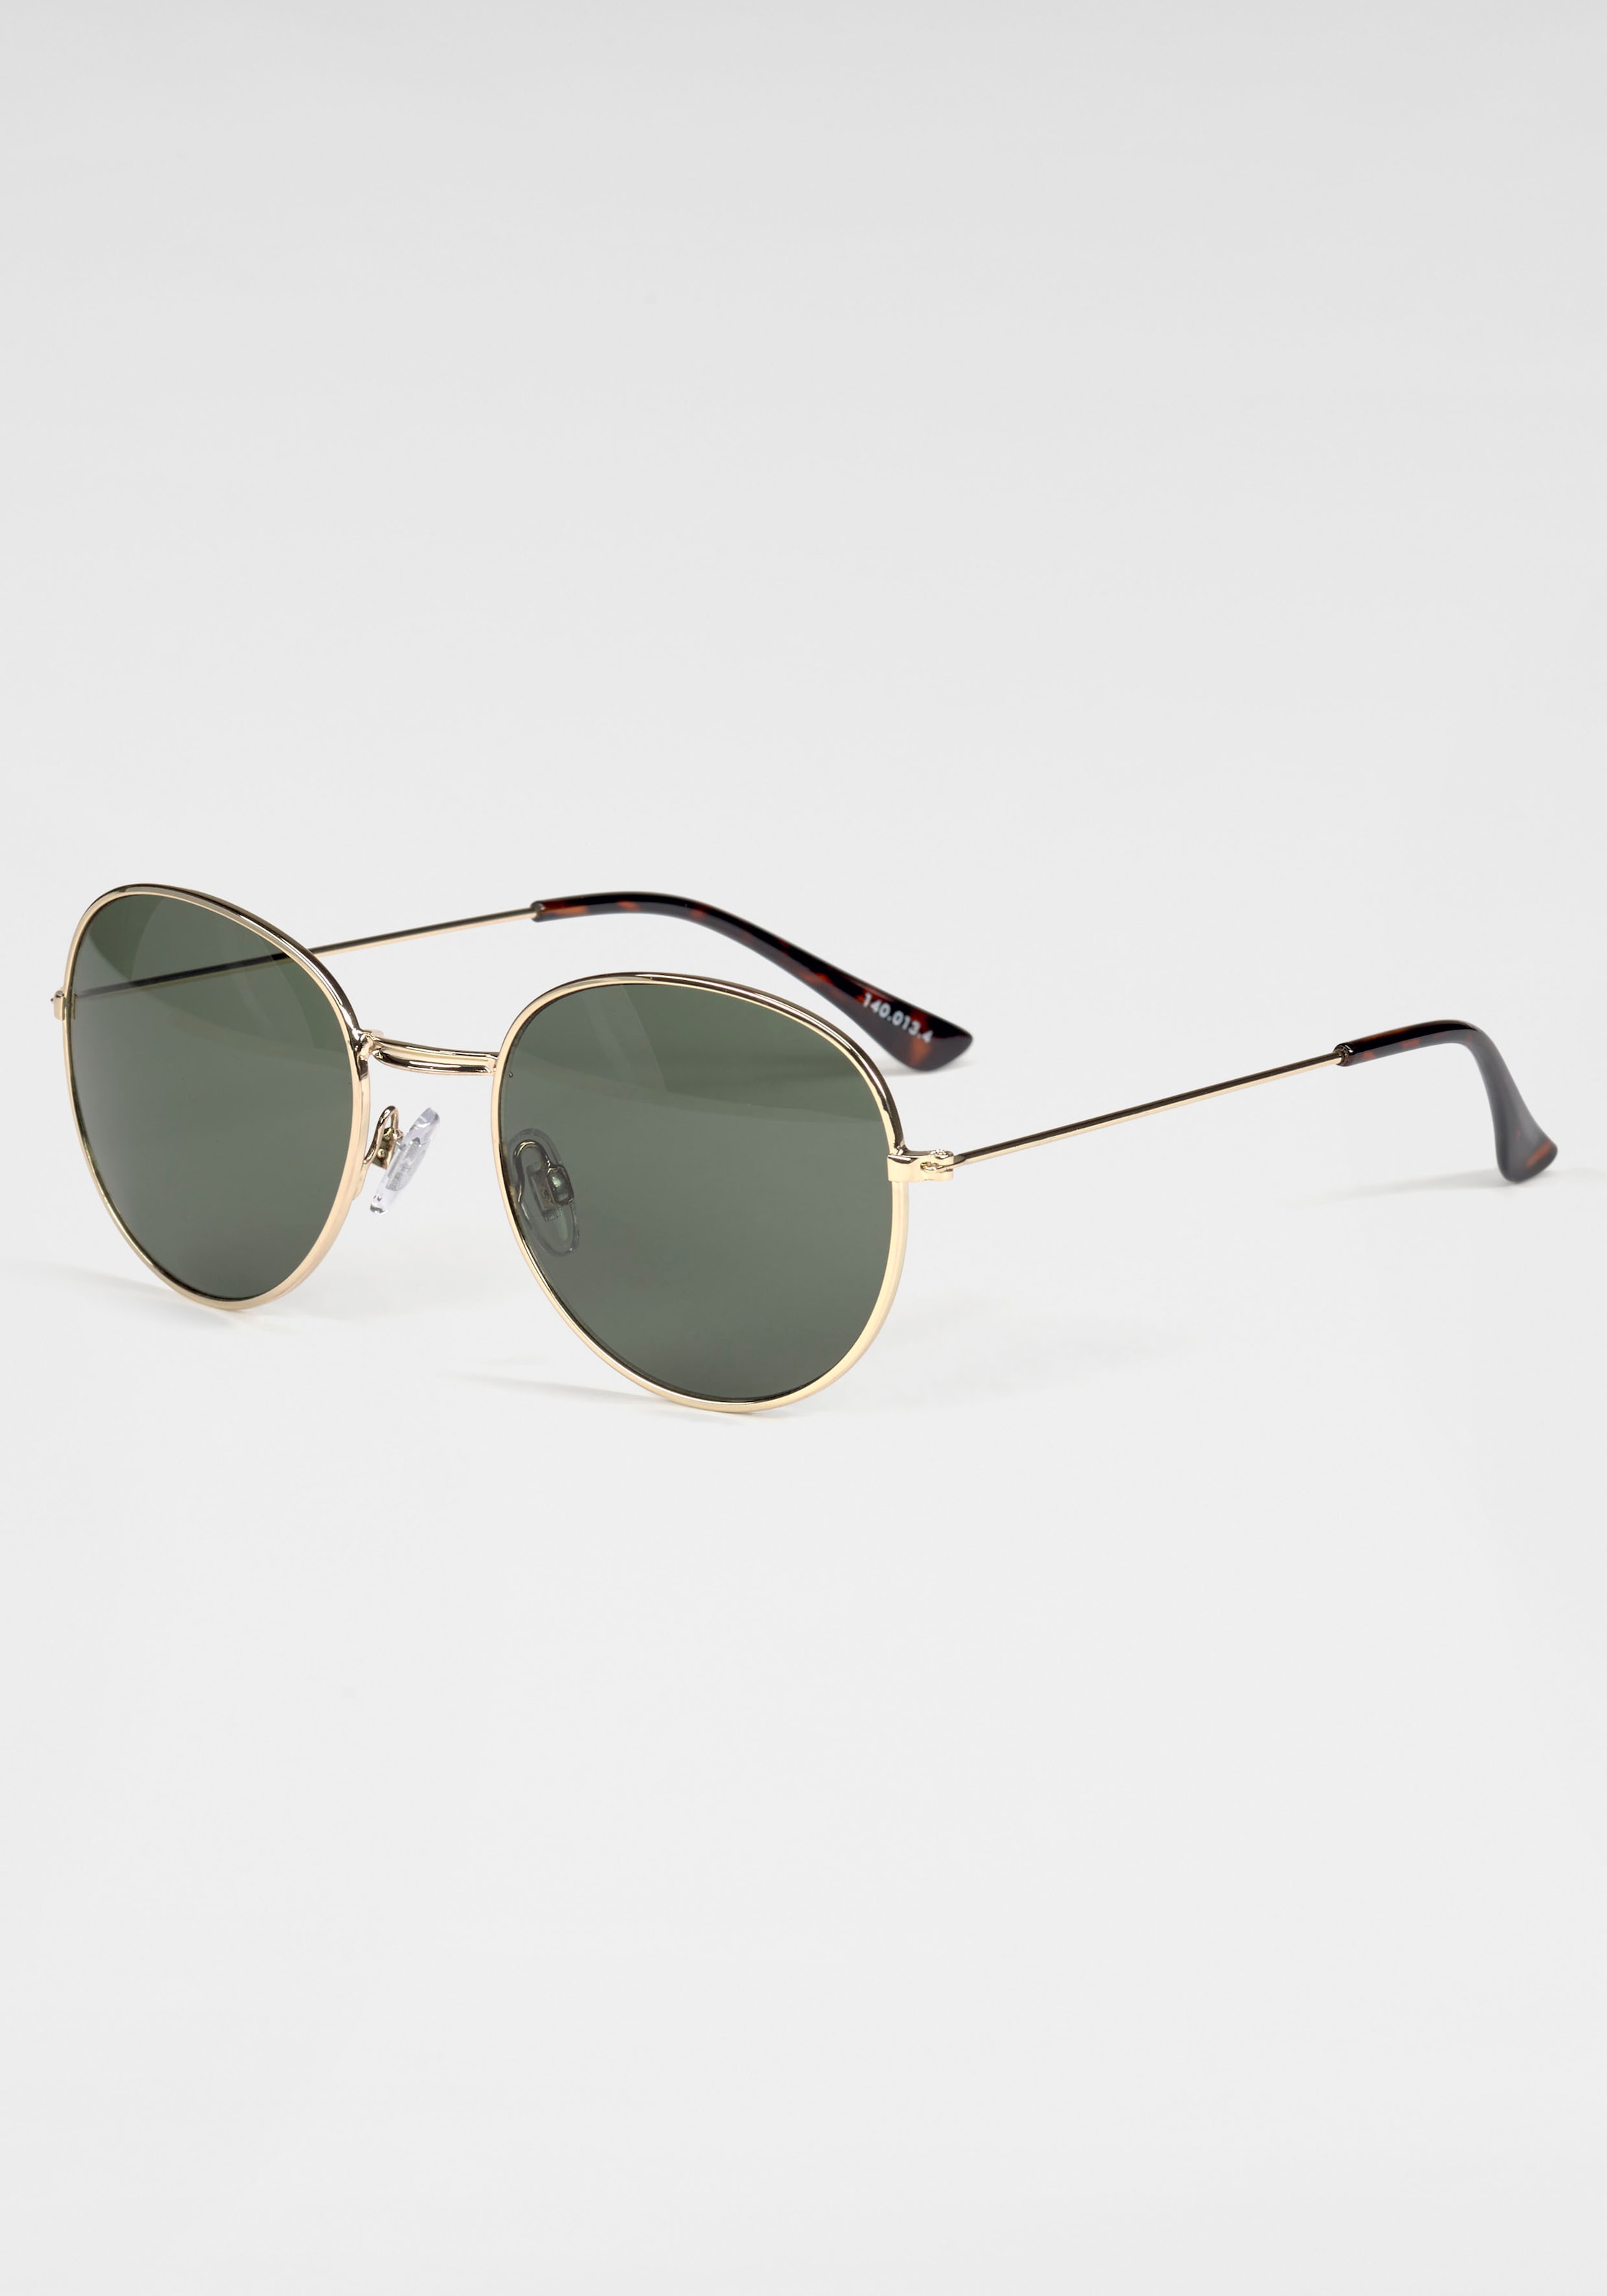 Sonnenbrille, Klassische runde Metall-Sonnenbrille in gold